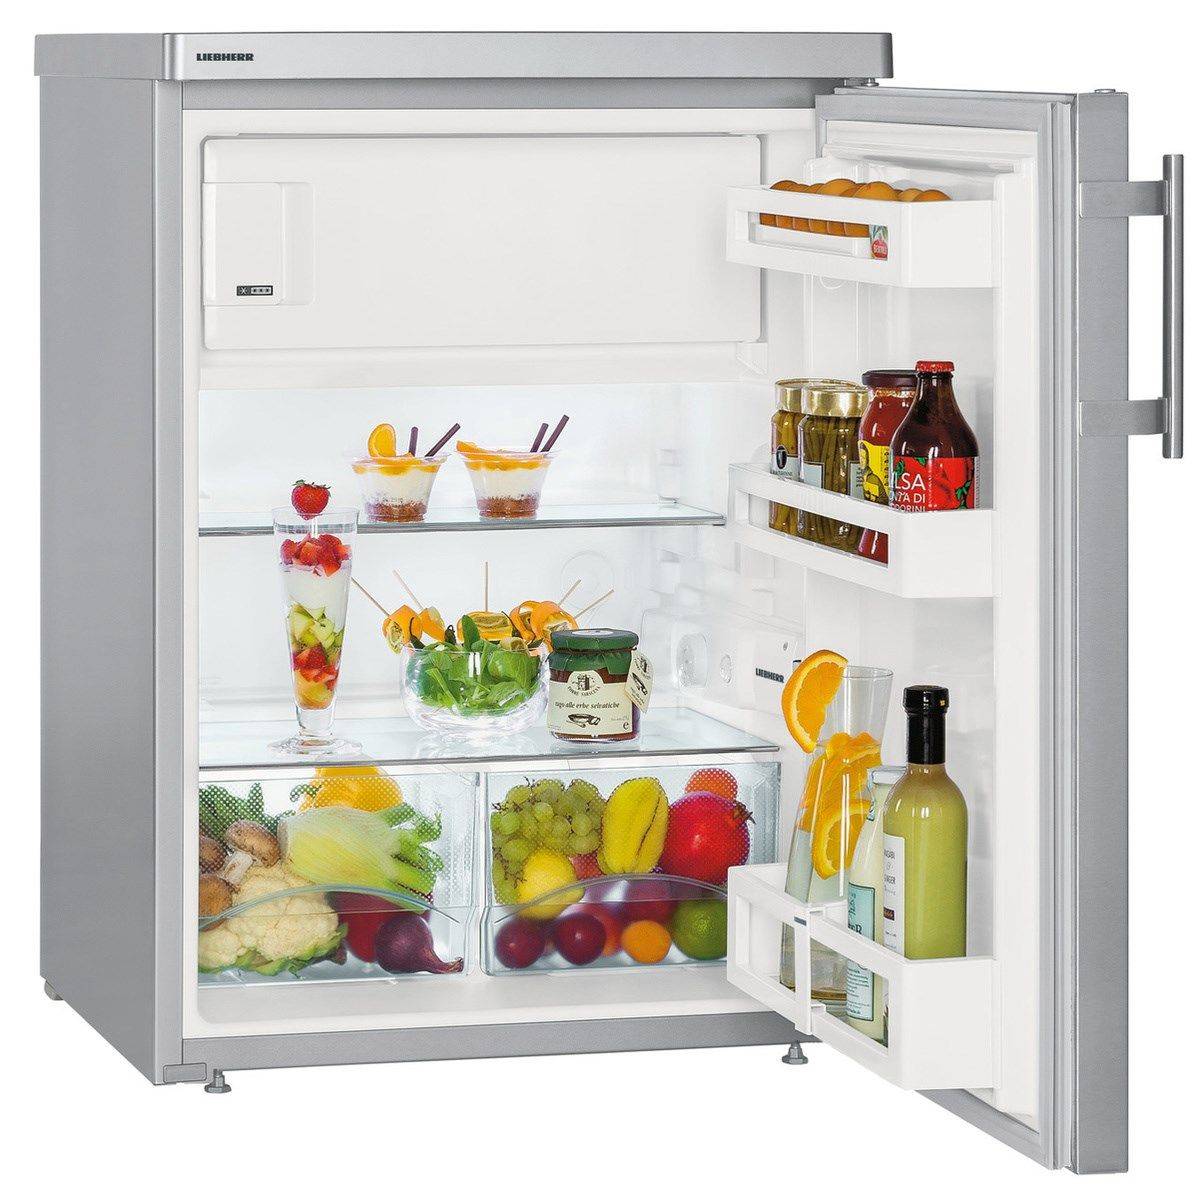 Как выбрать лучший компактный холодильник для дачи: виды, особенности подбора, на какие характеристики смотреть, обзор 6 популярных моделей, их плюсы и минусы